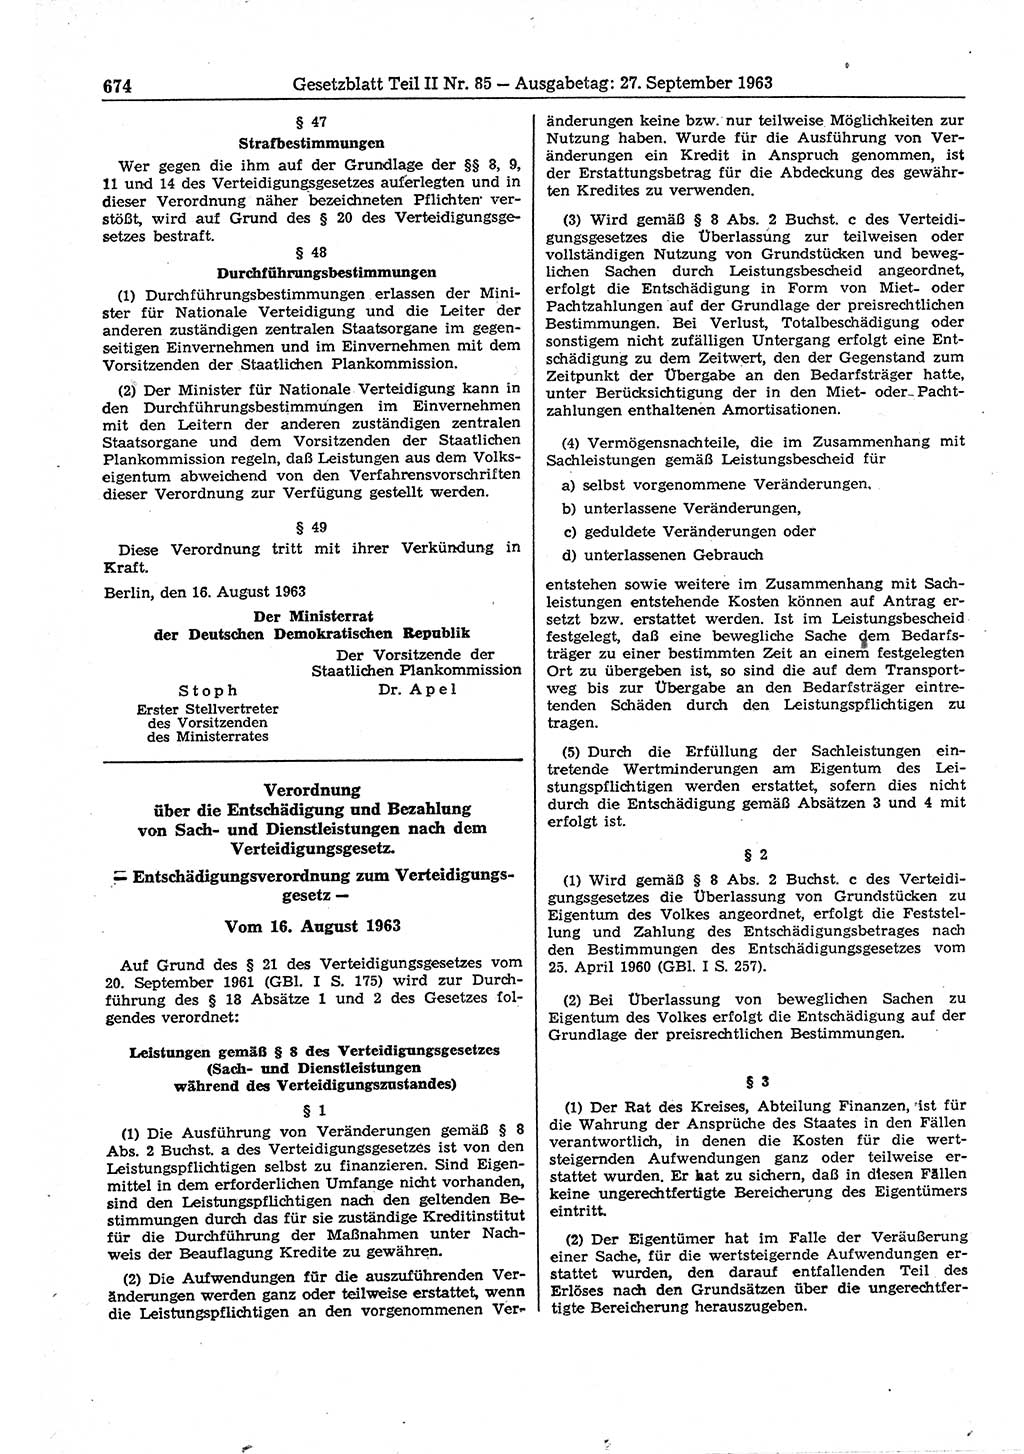 Gesetzblatt (GBl.) der Deutschen Demokratischen Republik (DDR) Teil ⅠⅠ 1963, Seite 674 (GBl. DDR ⅠⅠ 1963, S. 674)